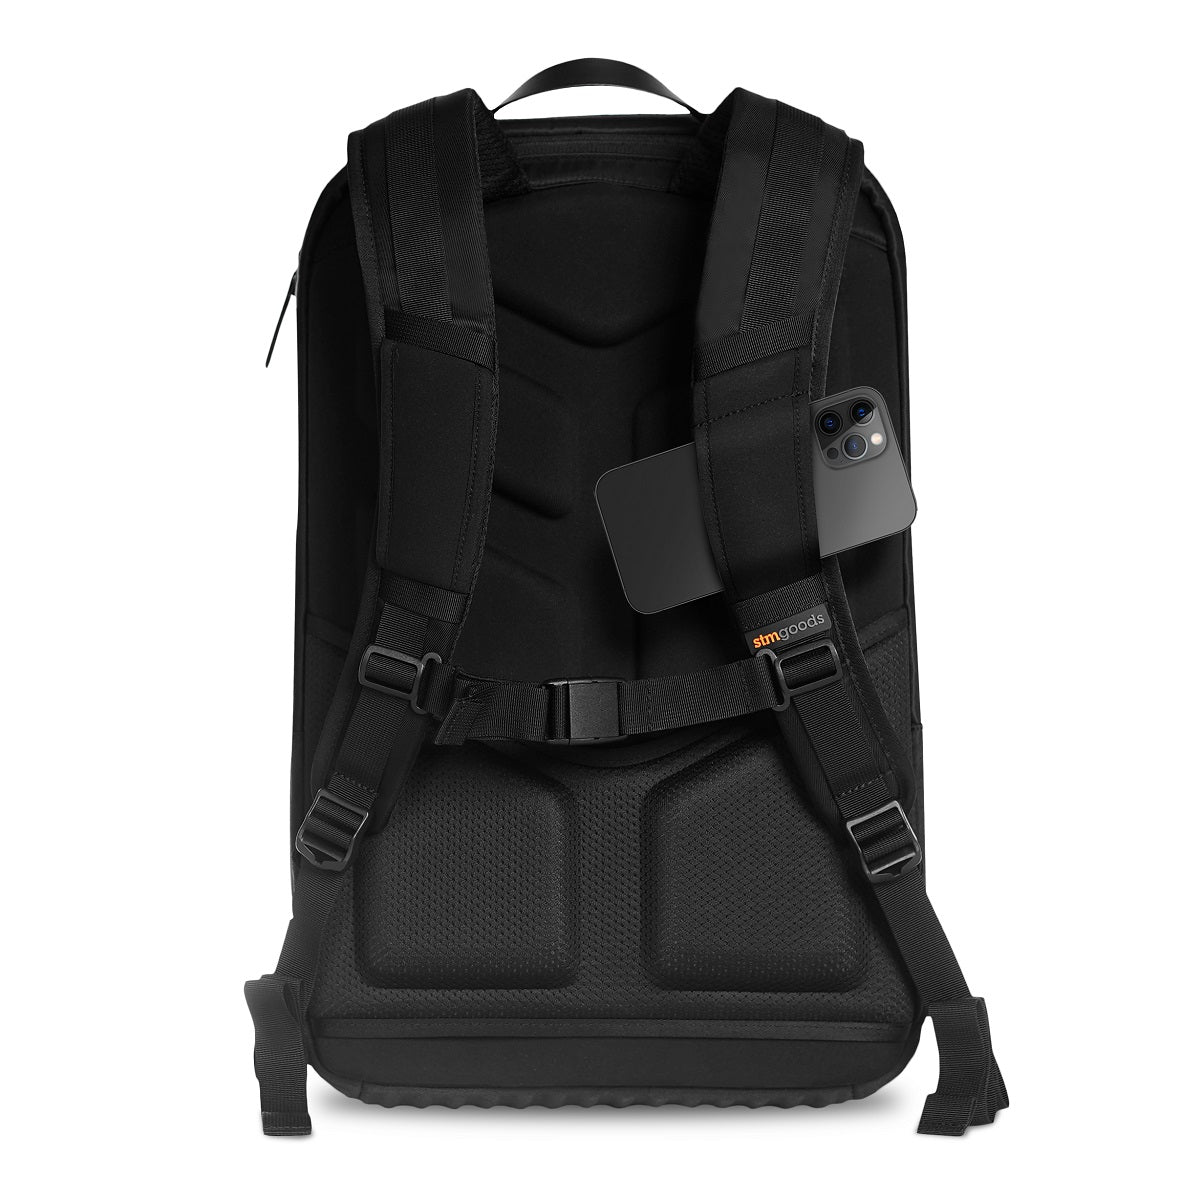 stm-dux-backpack-black-night-shoulder-straps_def99e70-d381-49f3-a298-dc121fac5da4.jpg